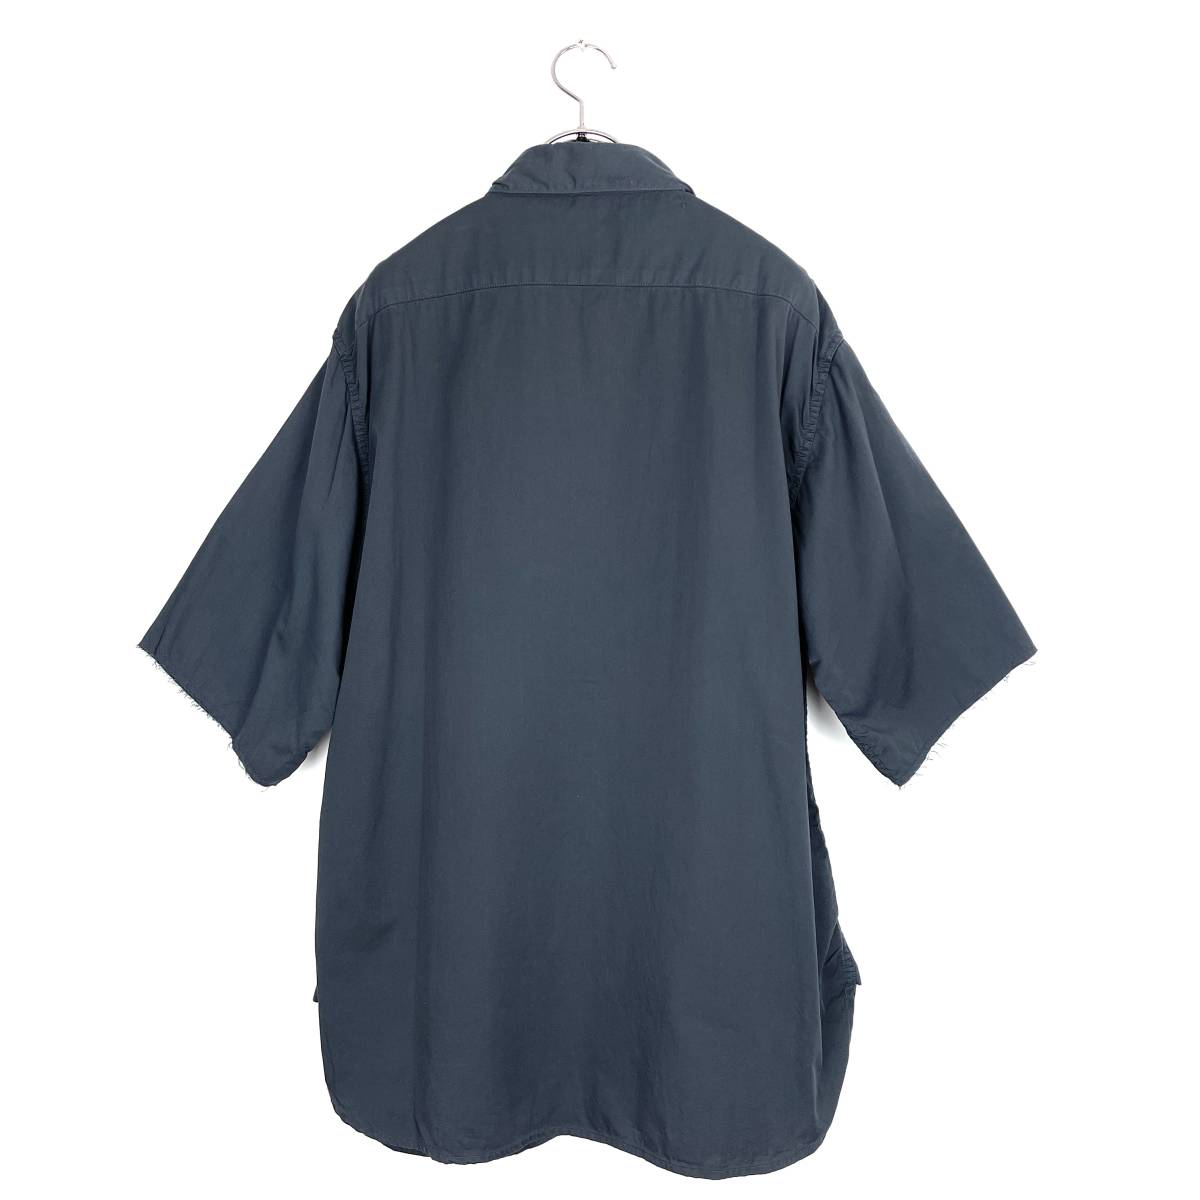 1.61(ワンポイントシックスティーワン) cotton short sleeve shirts (navy)